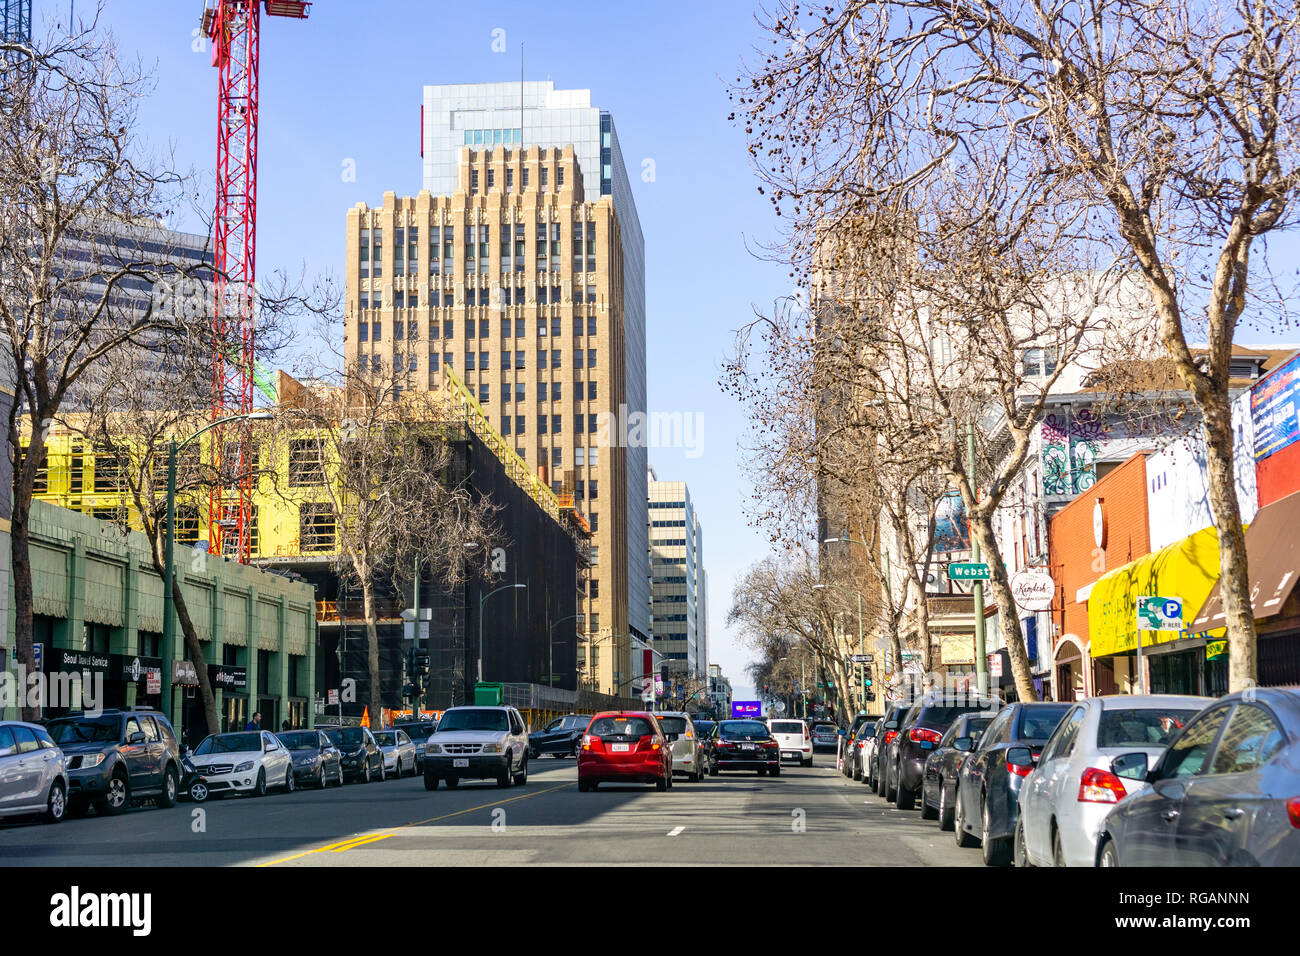 Januar 27, 2019 Oakland/CA/USA - eine belebte Straße in der Innenstadt von Oakland, San Francisco Bay Area. Stockfoto